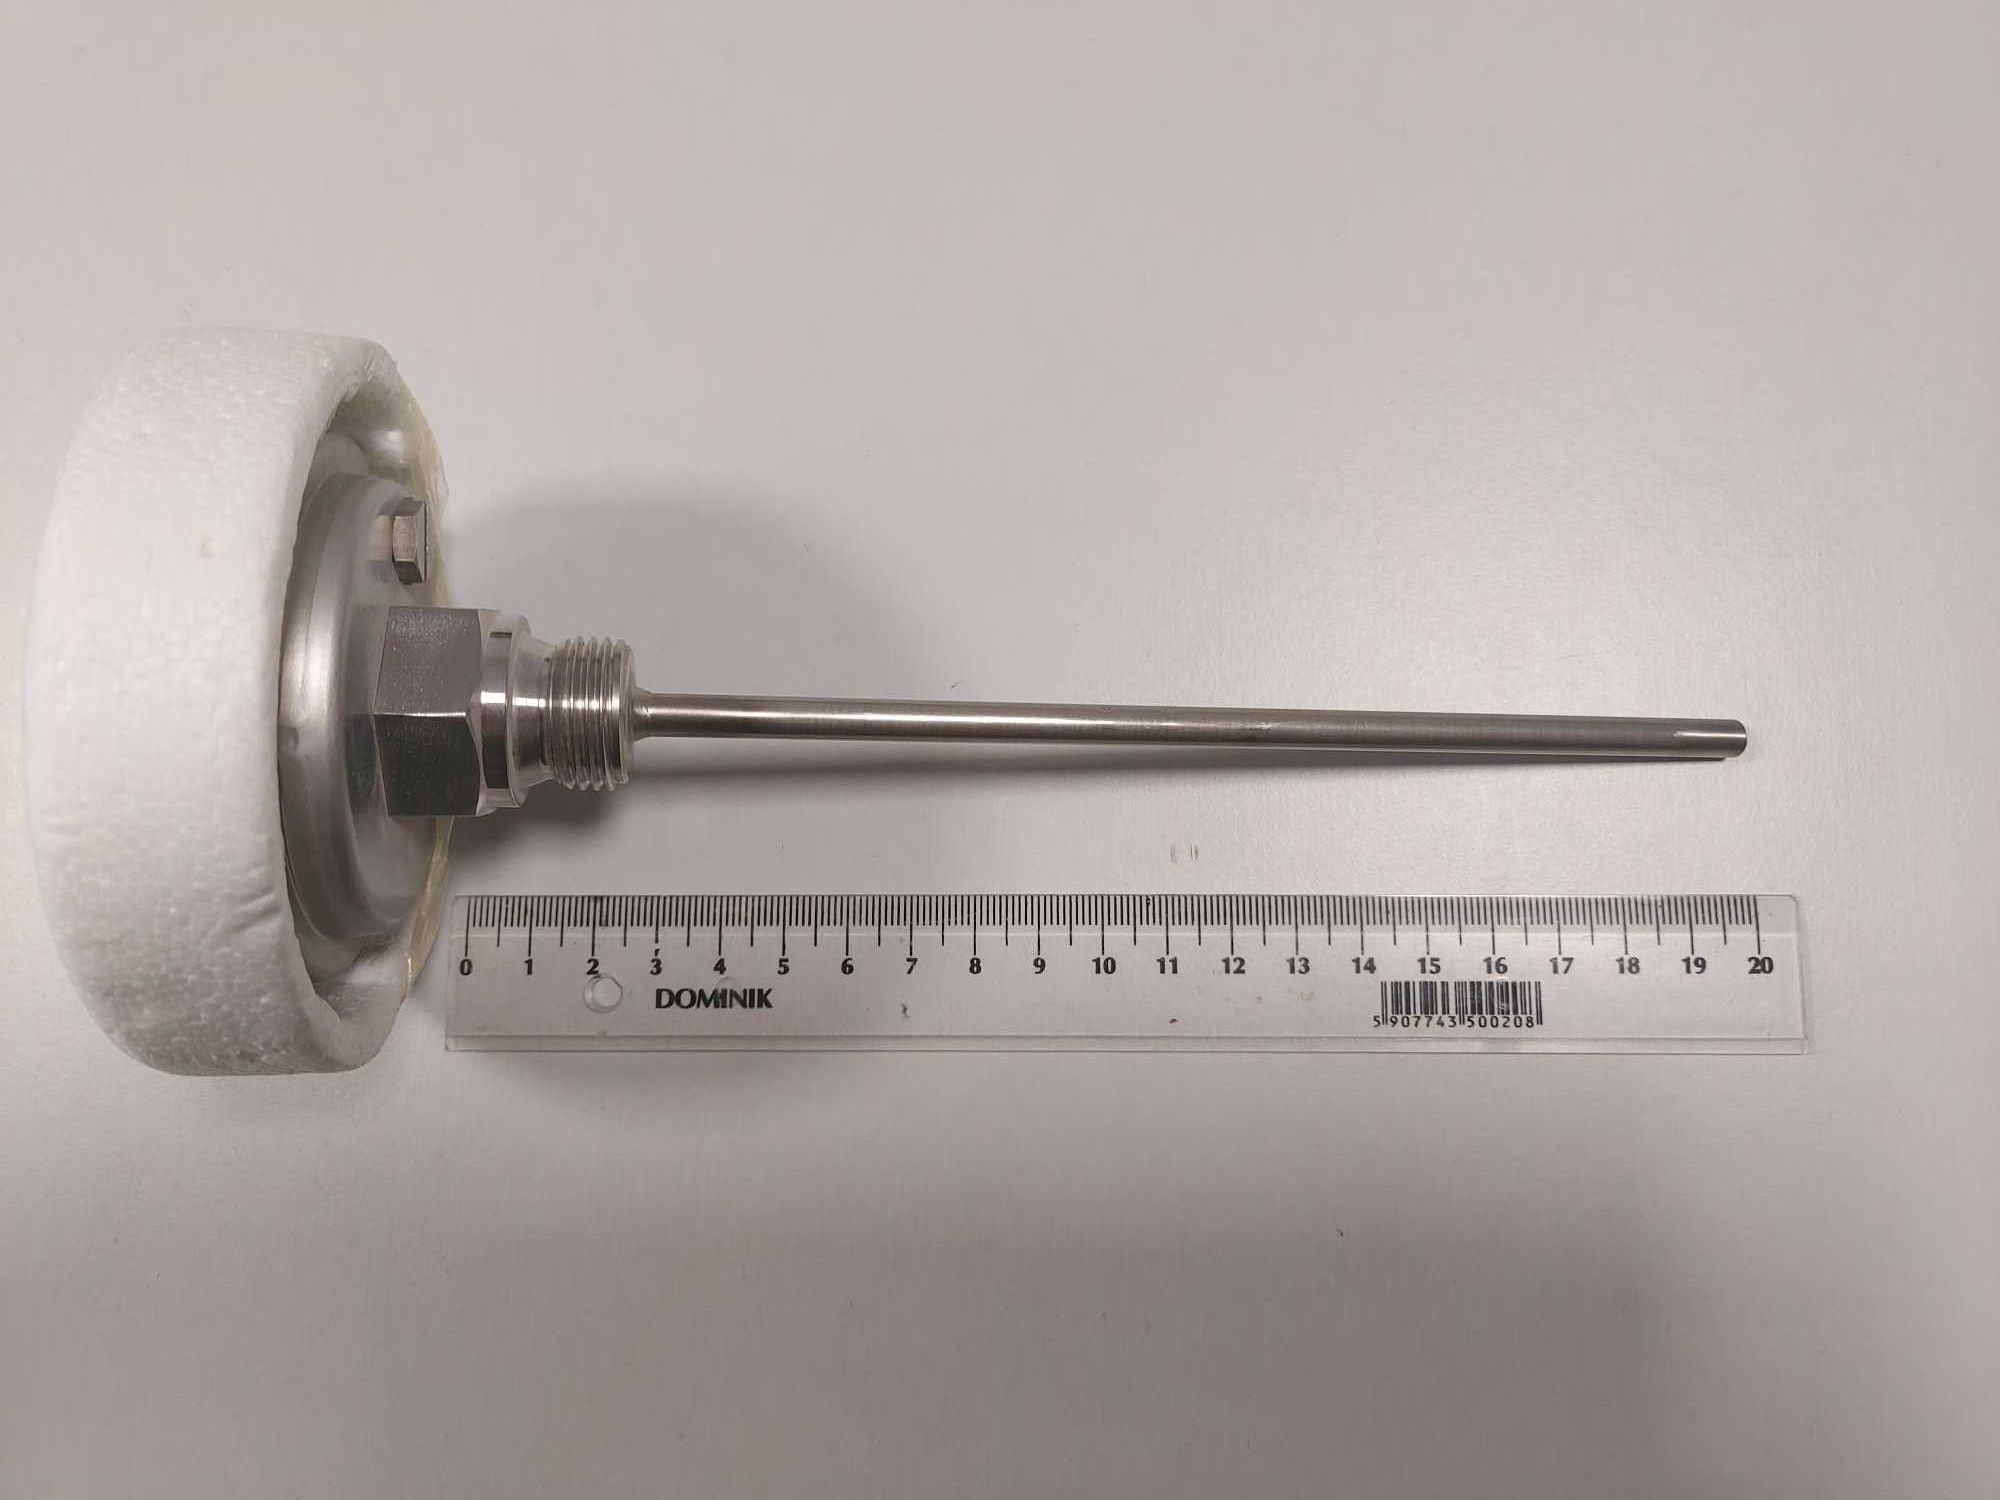 Termometr bimetaliczny ze stali nierdzewnej WIKA A5300/S, 5231.50